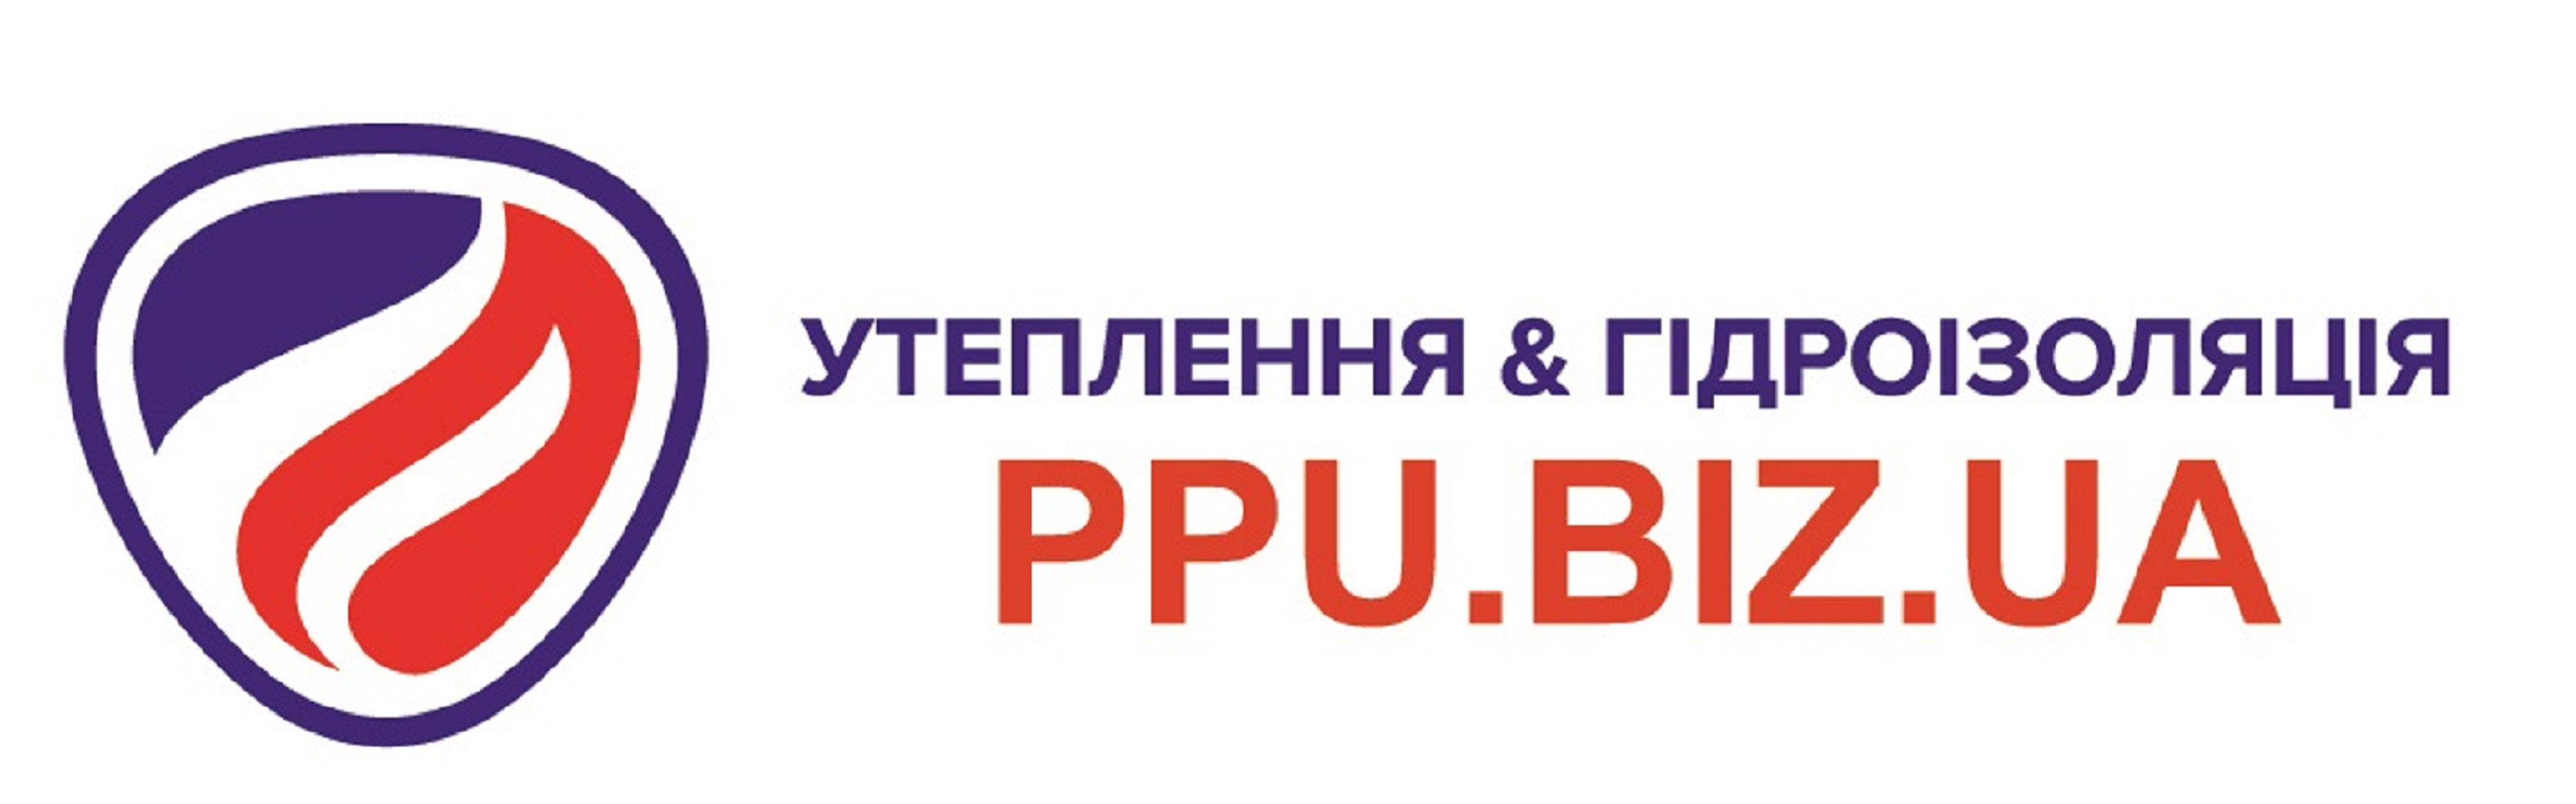 ppu biz ua Logo11